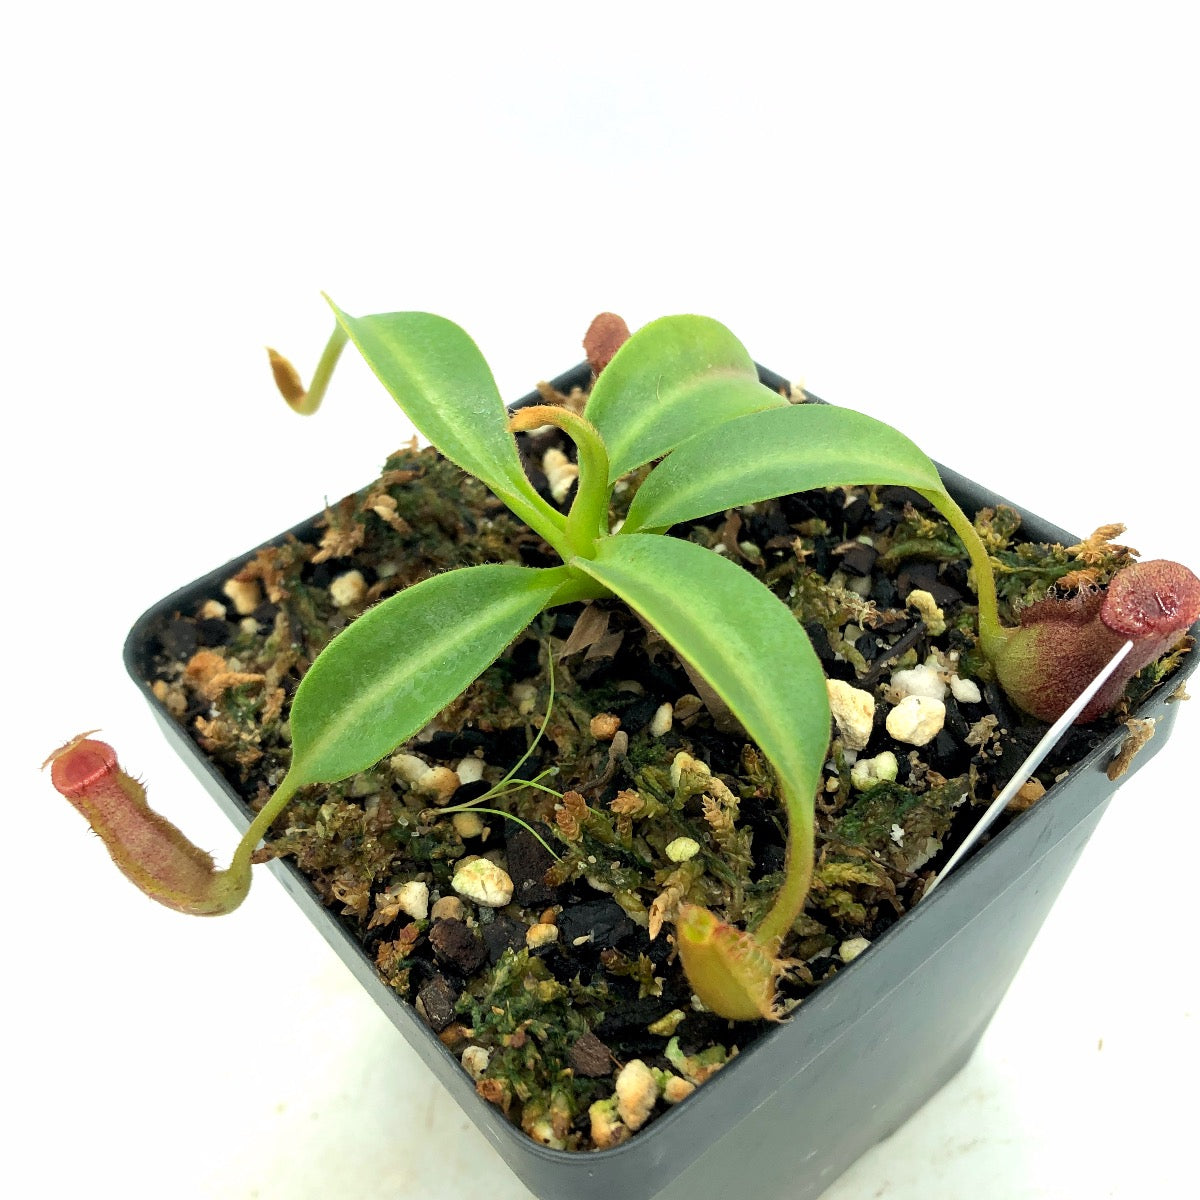 Nepenthes ([lowii x veitchii yellow] x boschiana) x trusmadiensis